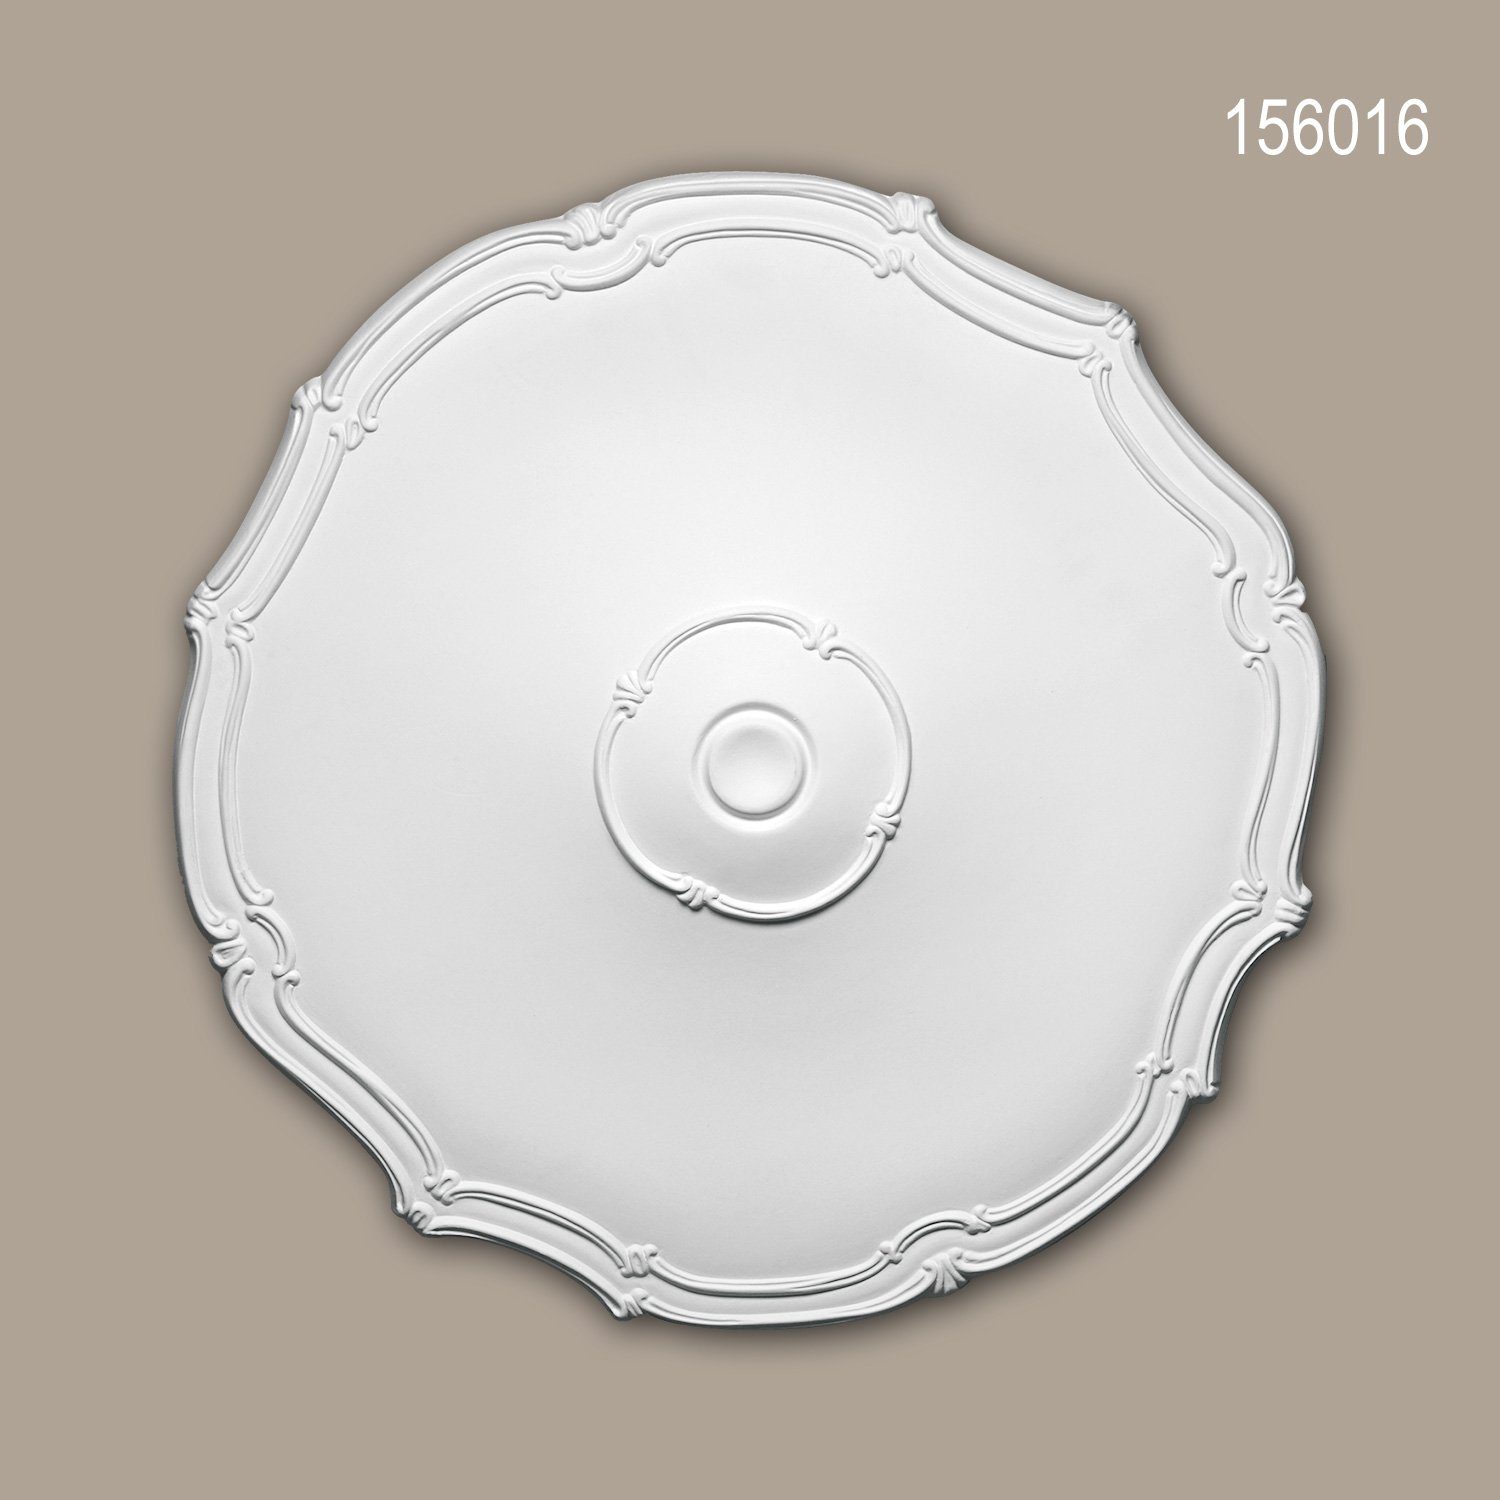 Profhome Decken-Rosette 156016 (Rosette, 1 St., Deckenrosette, Medallion, Stuckrosette, Deckenelement, Zierelement, Durchmesser 48 cm), weiß, vorgrundiert, Stil: Jugendstil